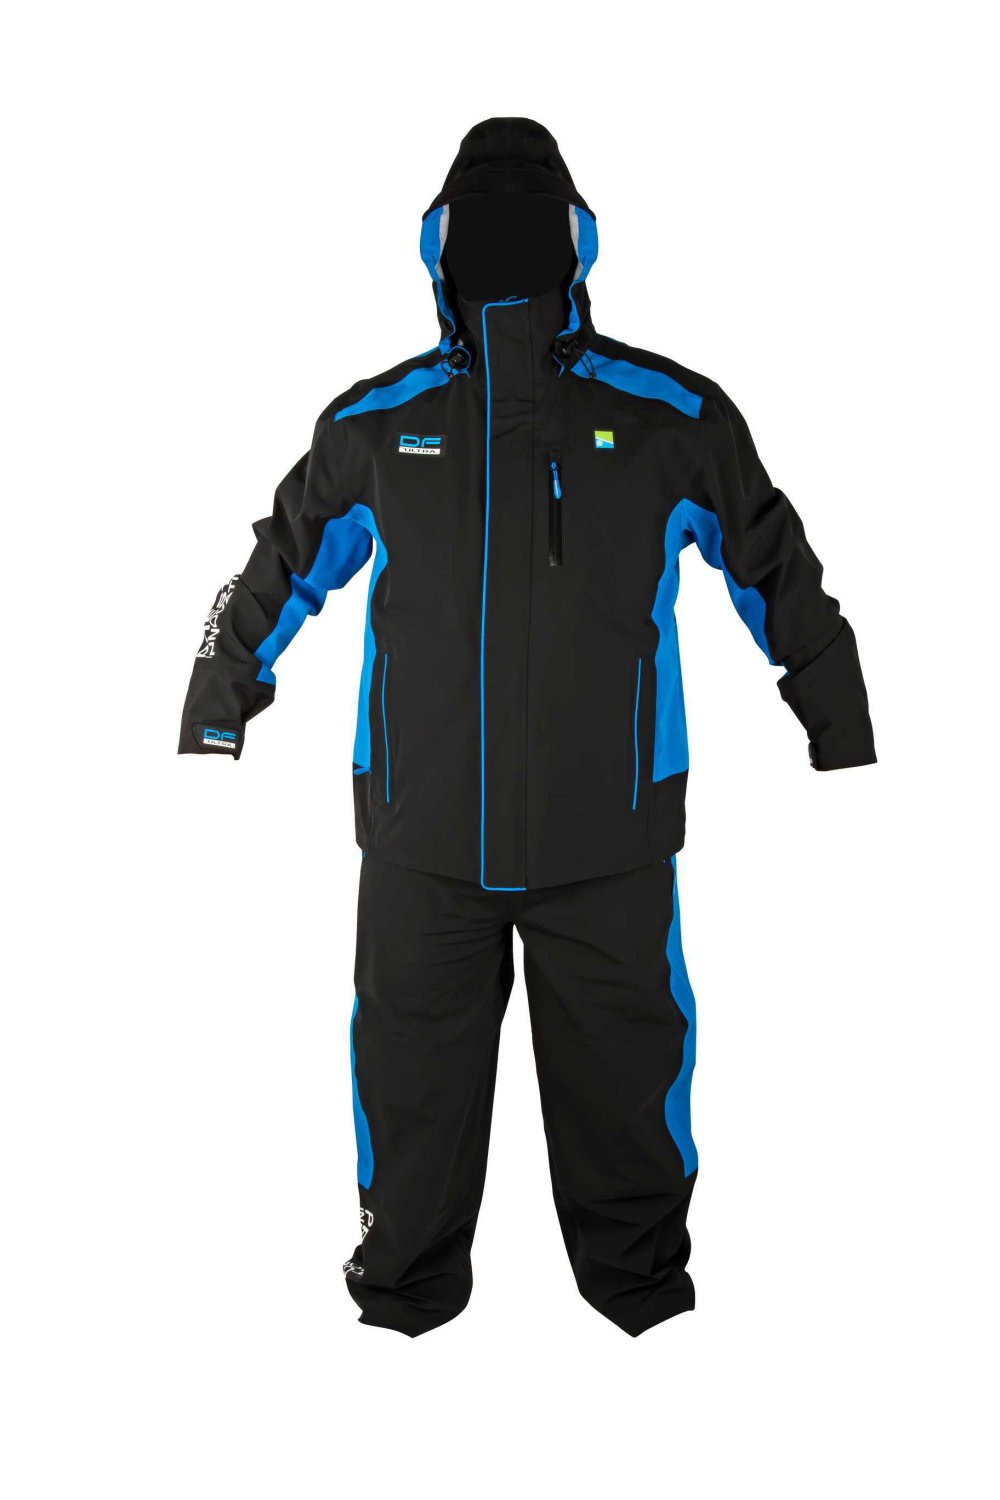 NextFish - Horgász webshop és horgászbolt - DF Ultra Suit - XL